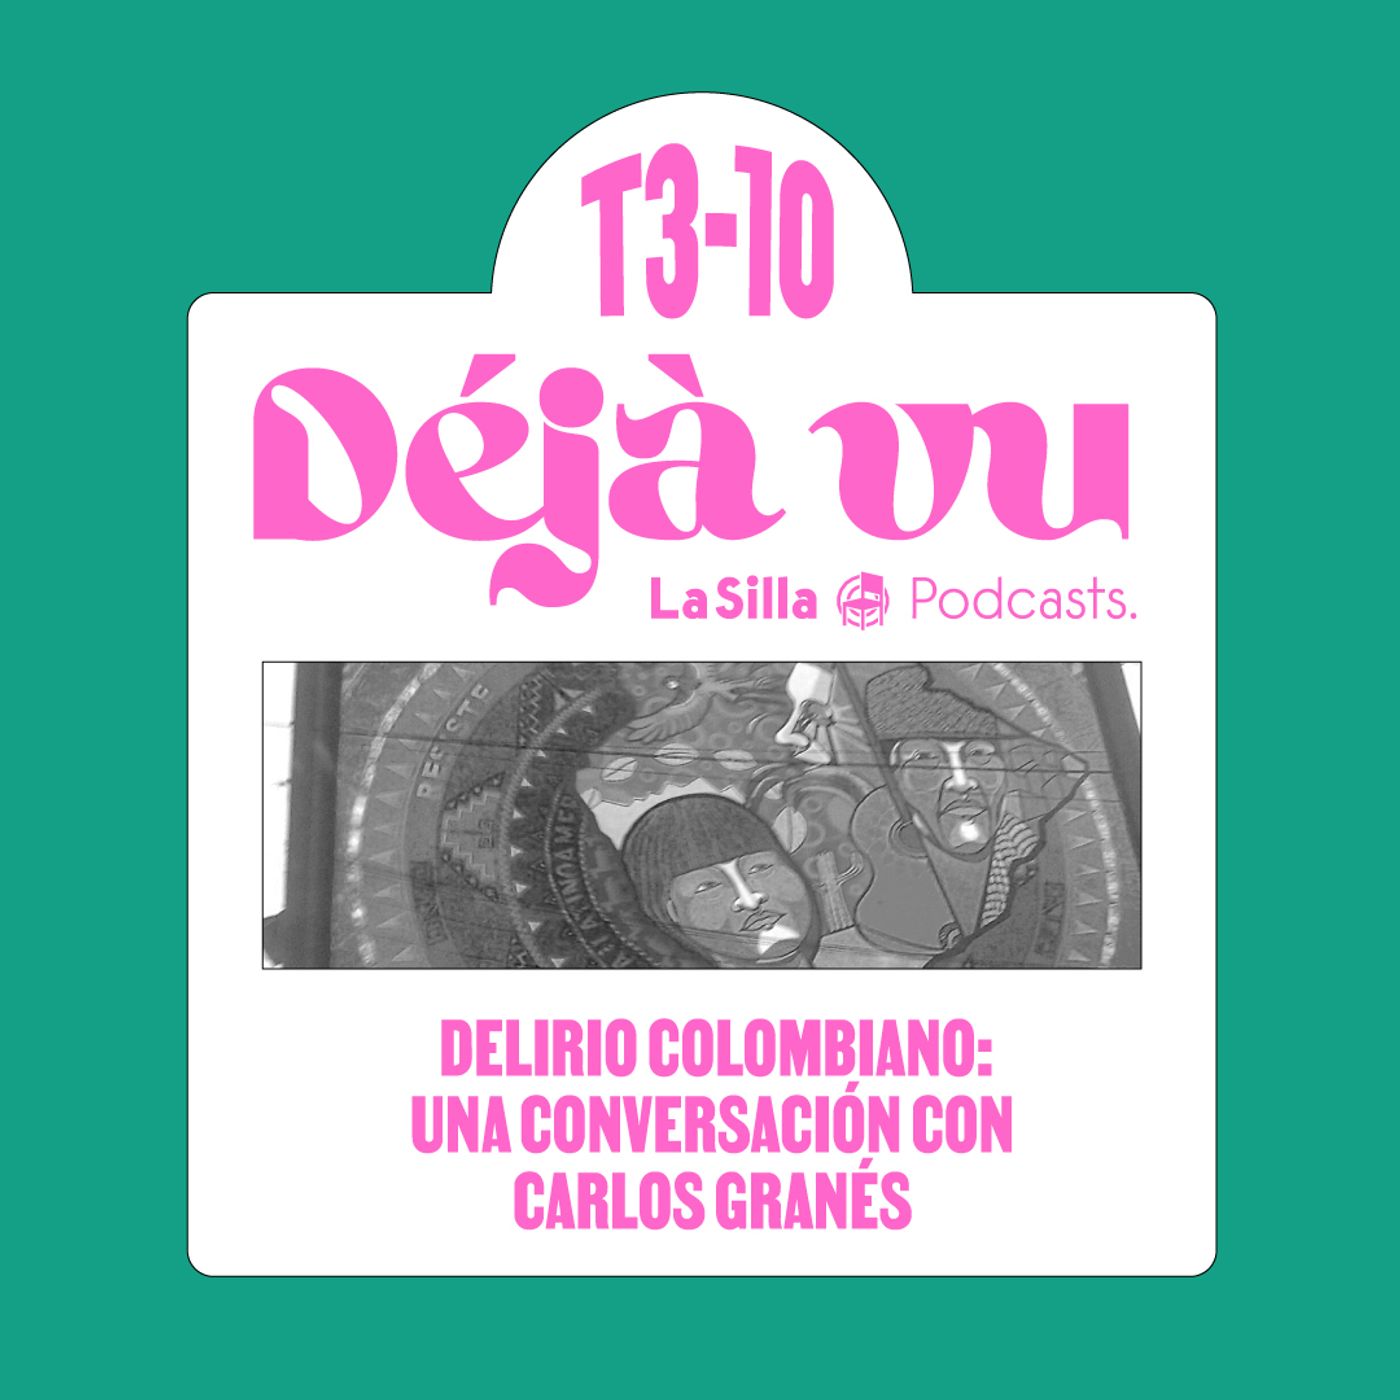 Delirio colombiano: una conversación con Carlos Granés.